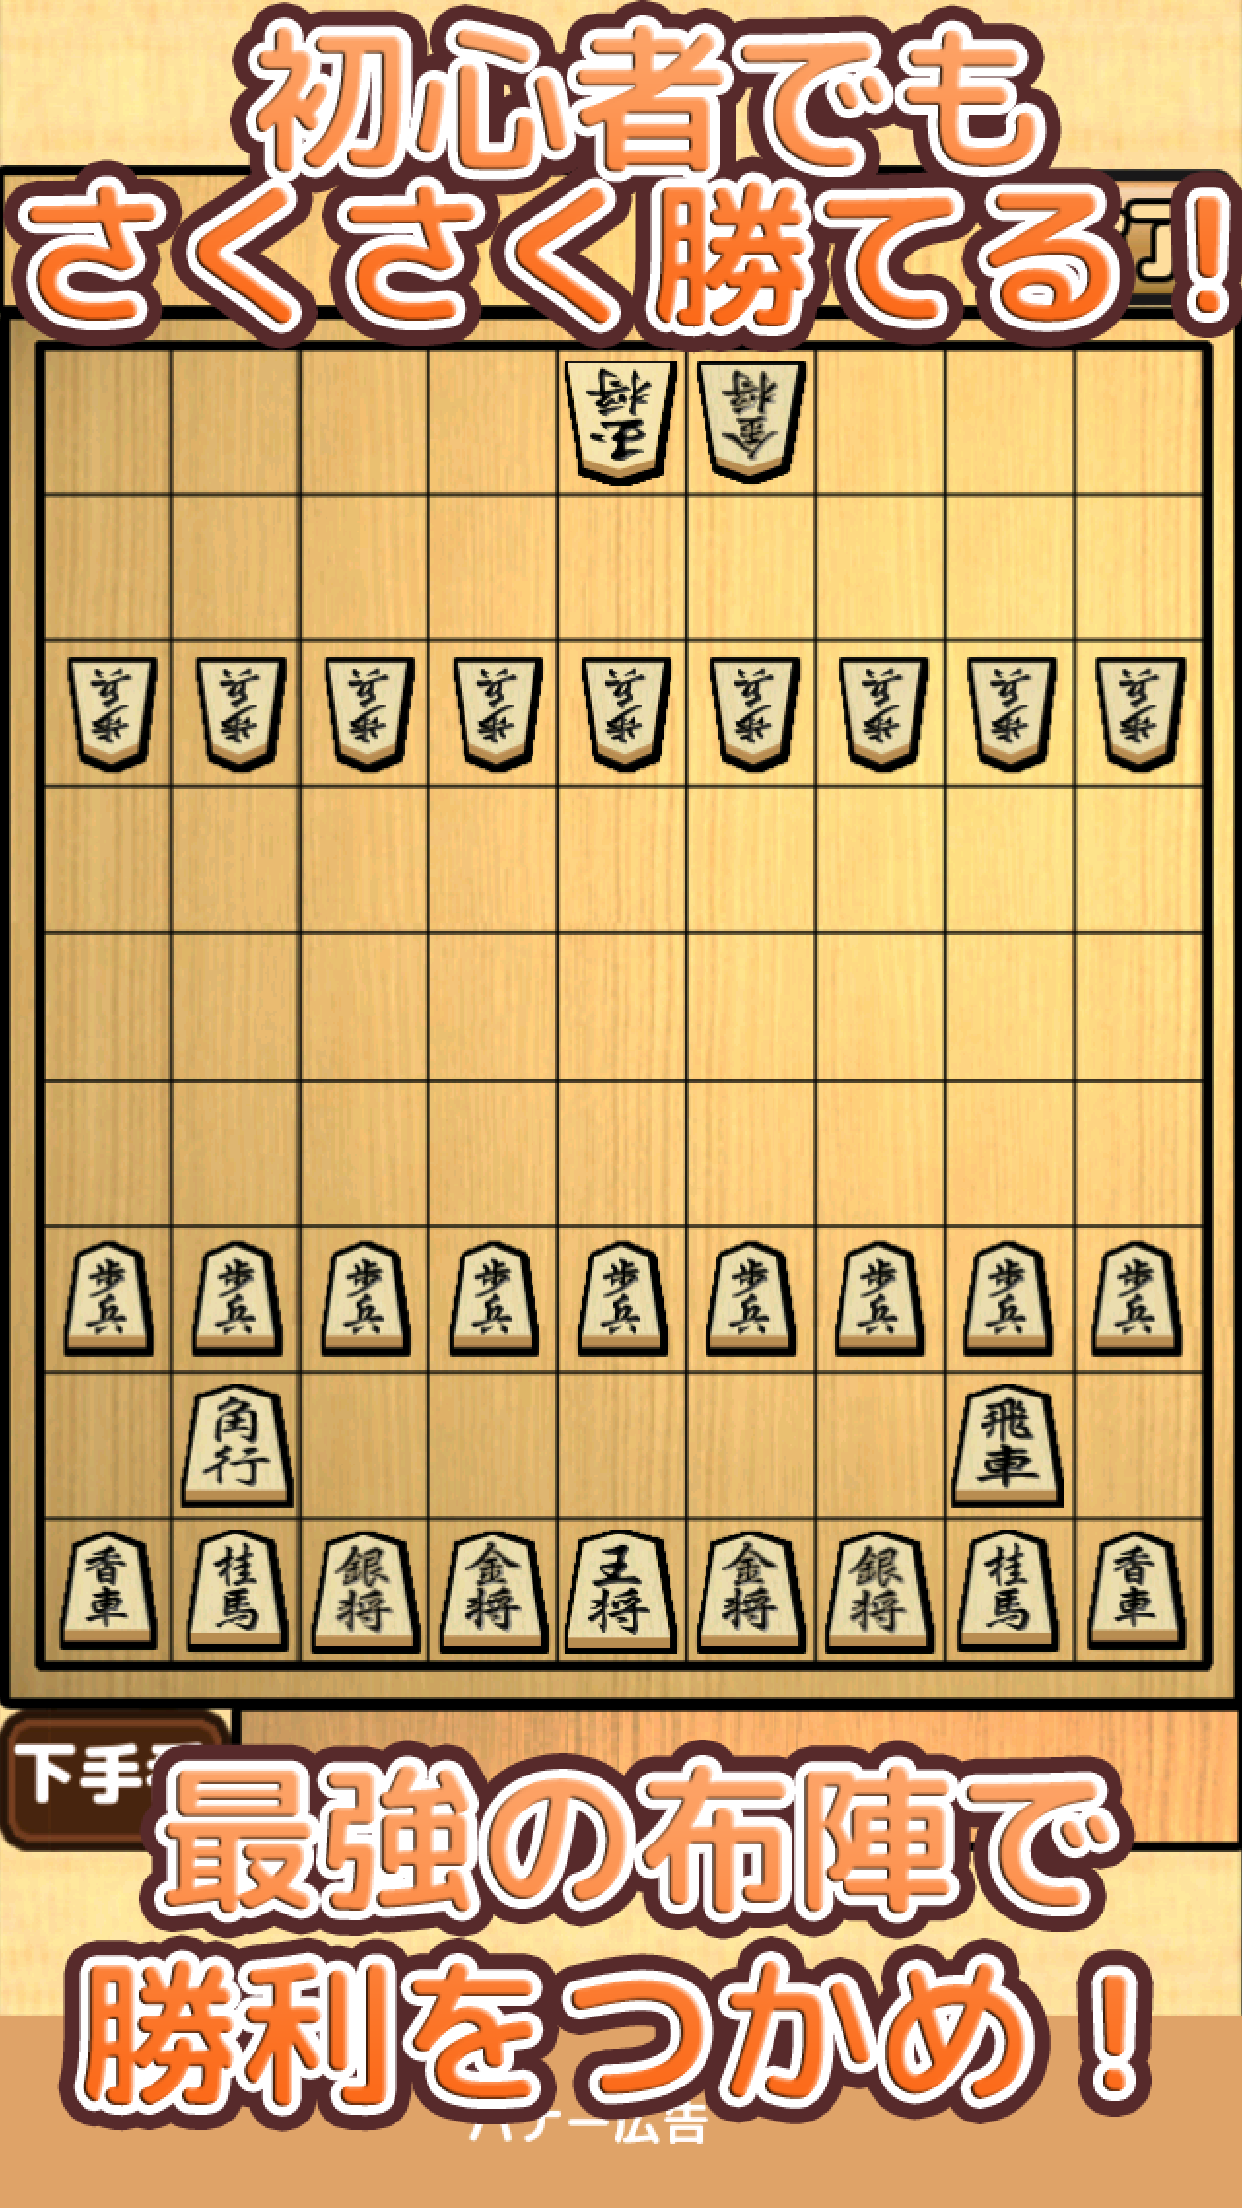 Screenshot 1 of शोगी का परिचय - एक साधारण शोगी गेम जिसे नौसिखिए भी आसानी से जीत सकते हैं 0.1.6